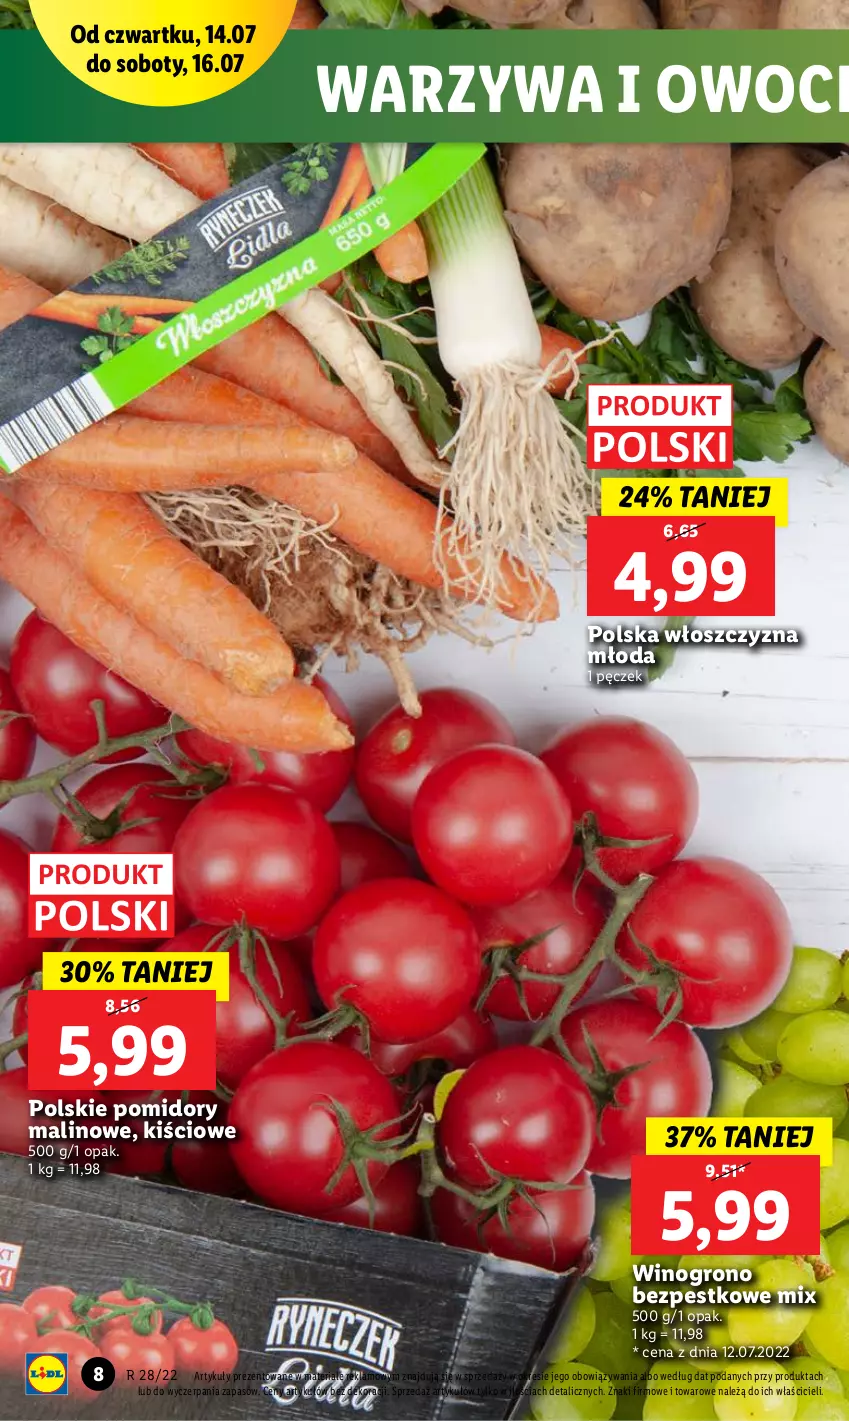 Gazetka promocyjna Lidl - GAZETKA - ważna 14.07 do 16.07.2022 - strona 8 - produkty: Owoce, Pomidory, Warzywa, Warzywa i owoce, Wino